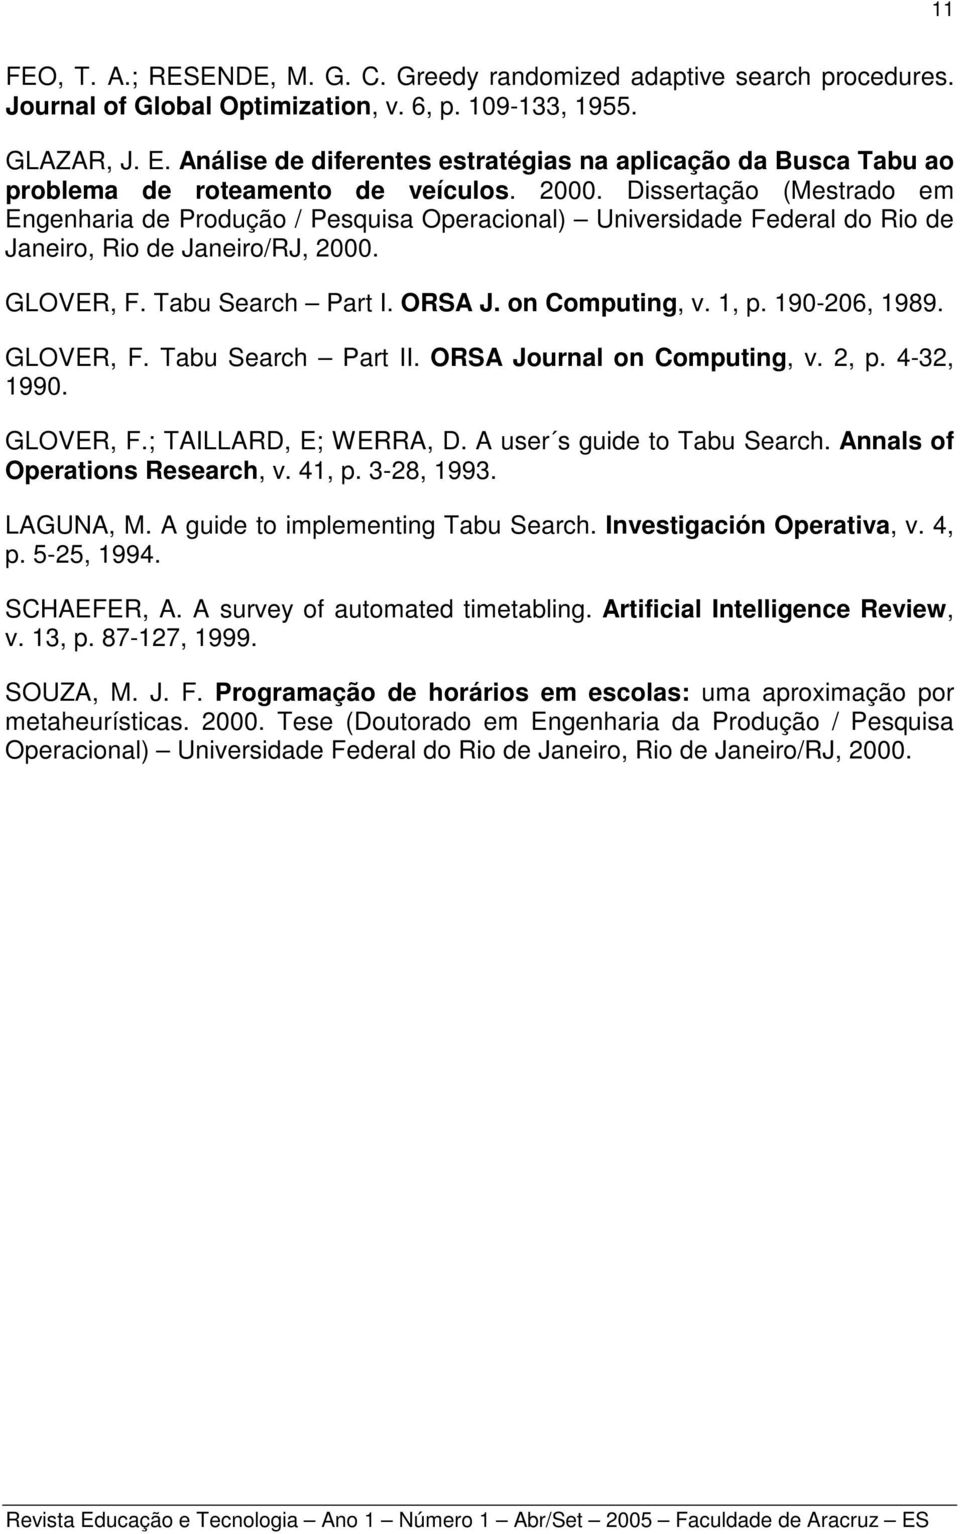 Dissertação (Mestrado em Engenharia de Produção / Pesquisa Operacional) Universidade Federal do Rio de Janeiro, Rio de Janeiro/RJ, 2000. GLOVER, F. Tabu Search Part I. ORSA J. on Computing, v. 1, p.